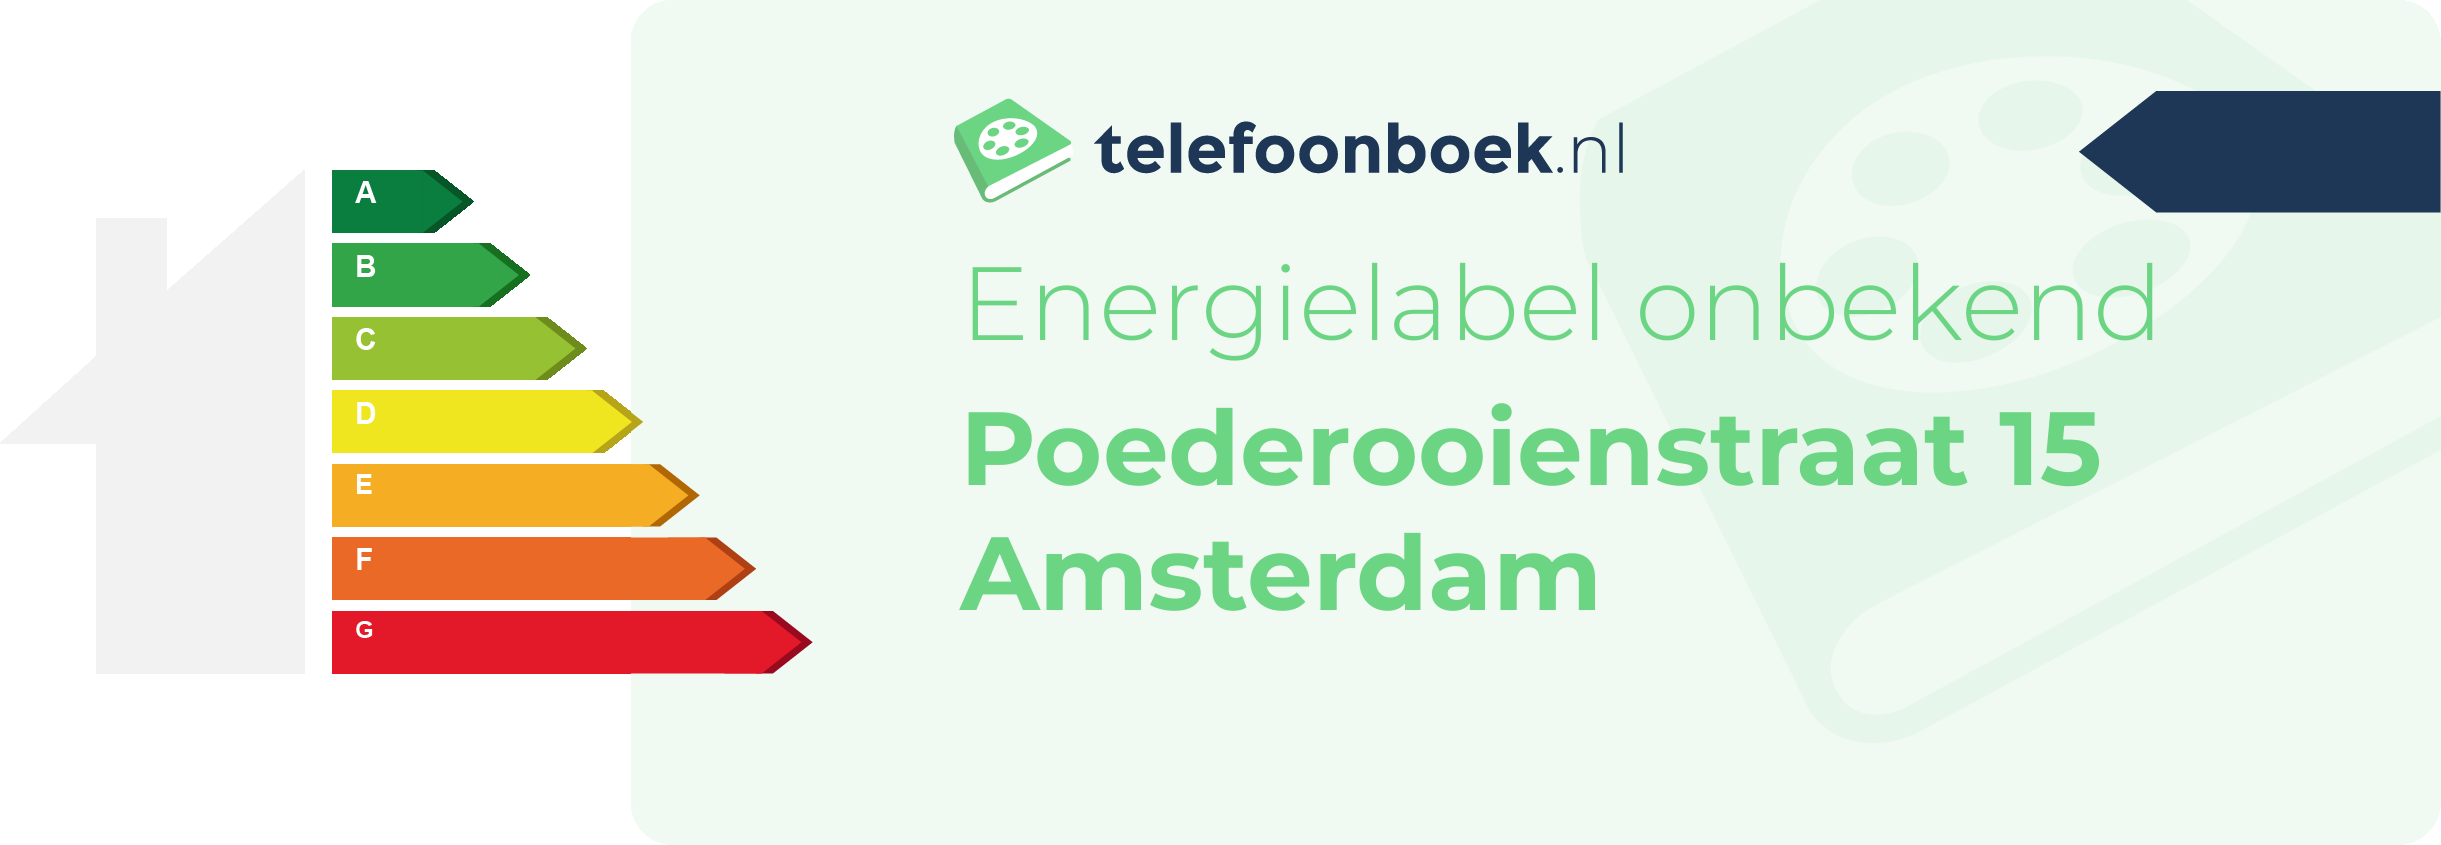 Energielabel Poederooienstraat 15 Amsterdam